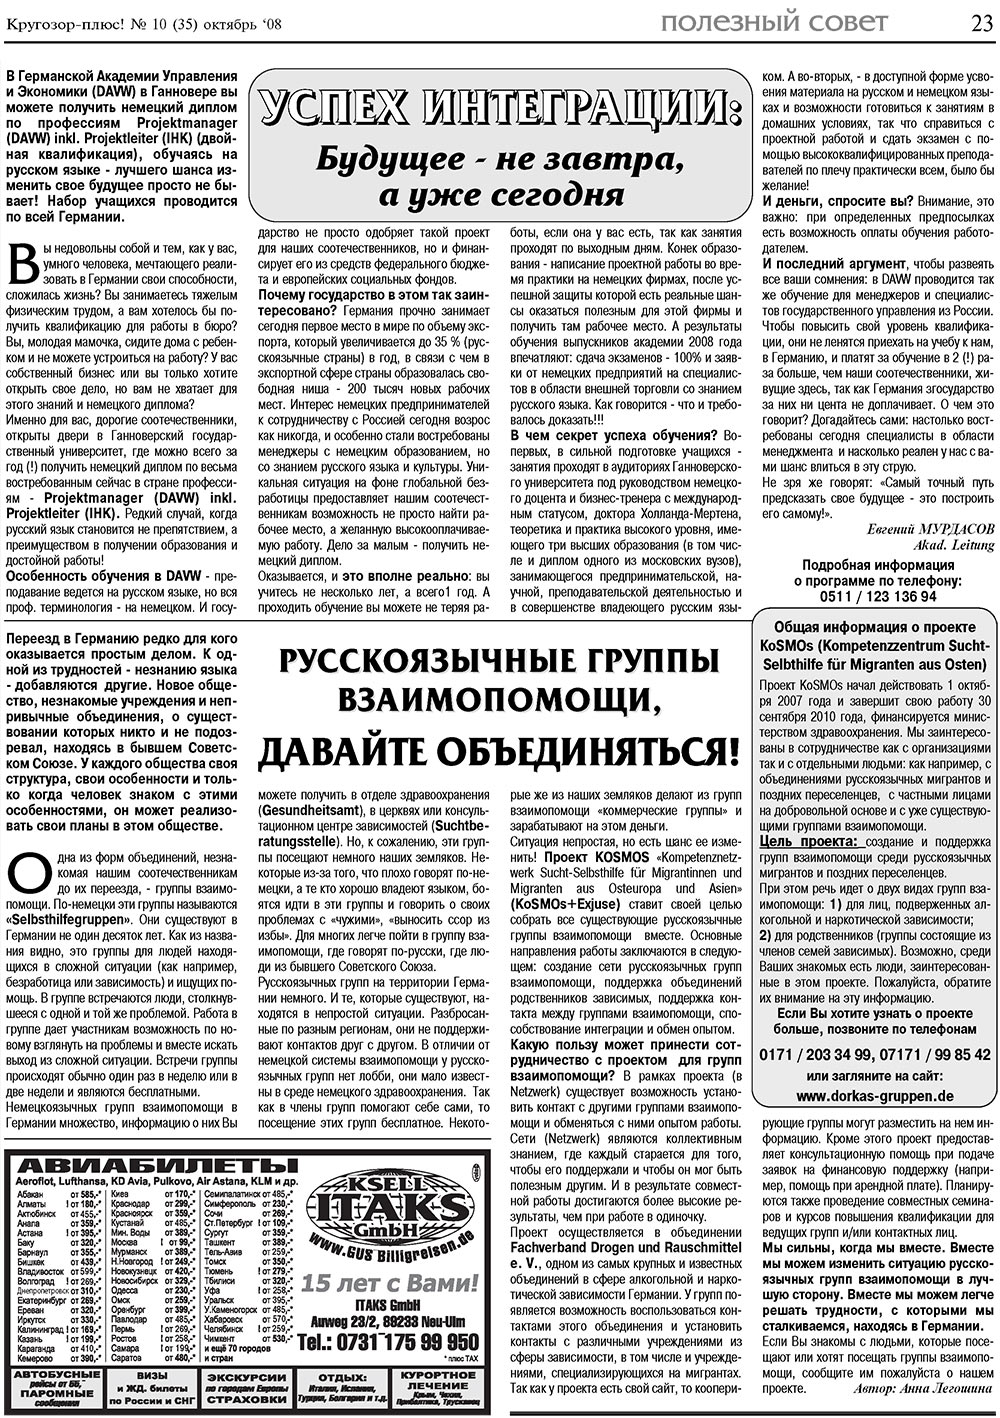 Кругозор плюс!, газета. 2008 №10 стр.23